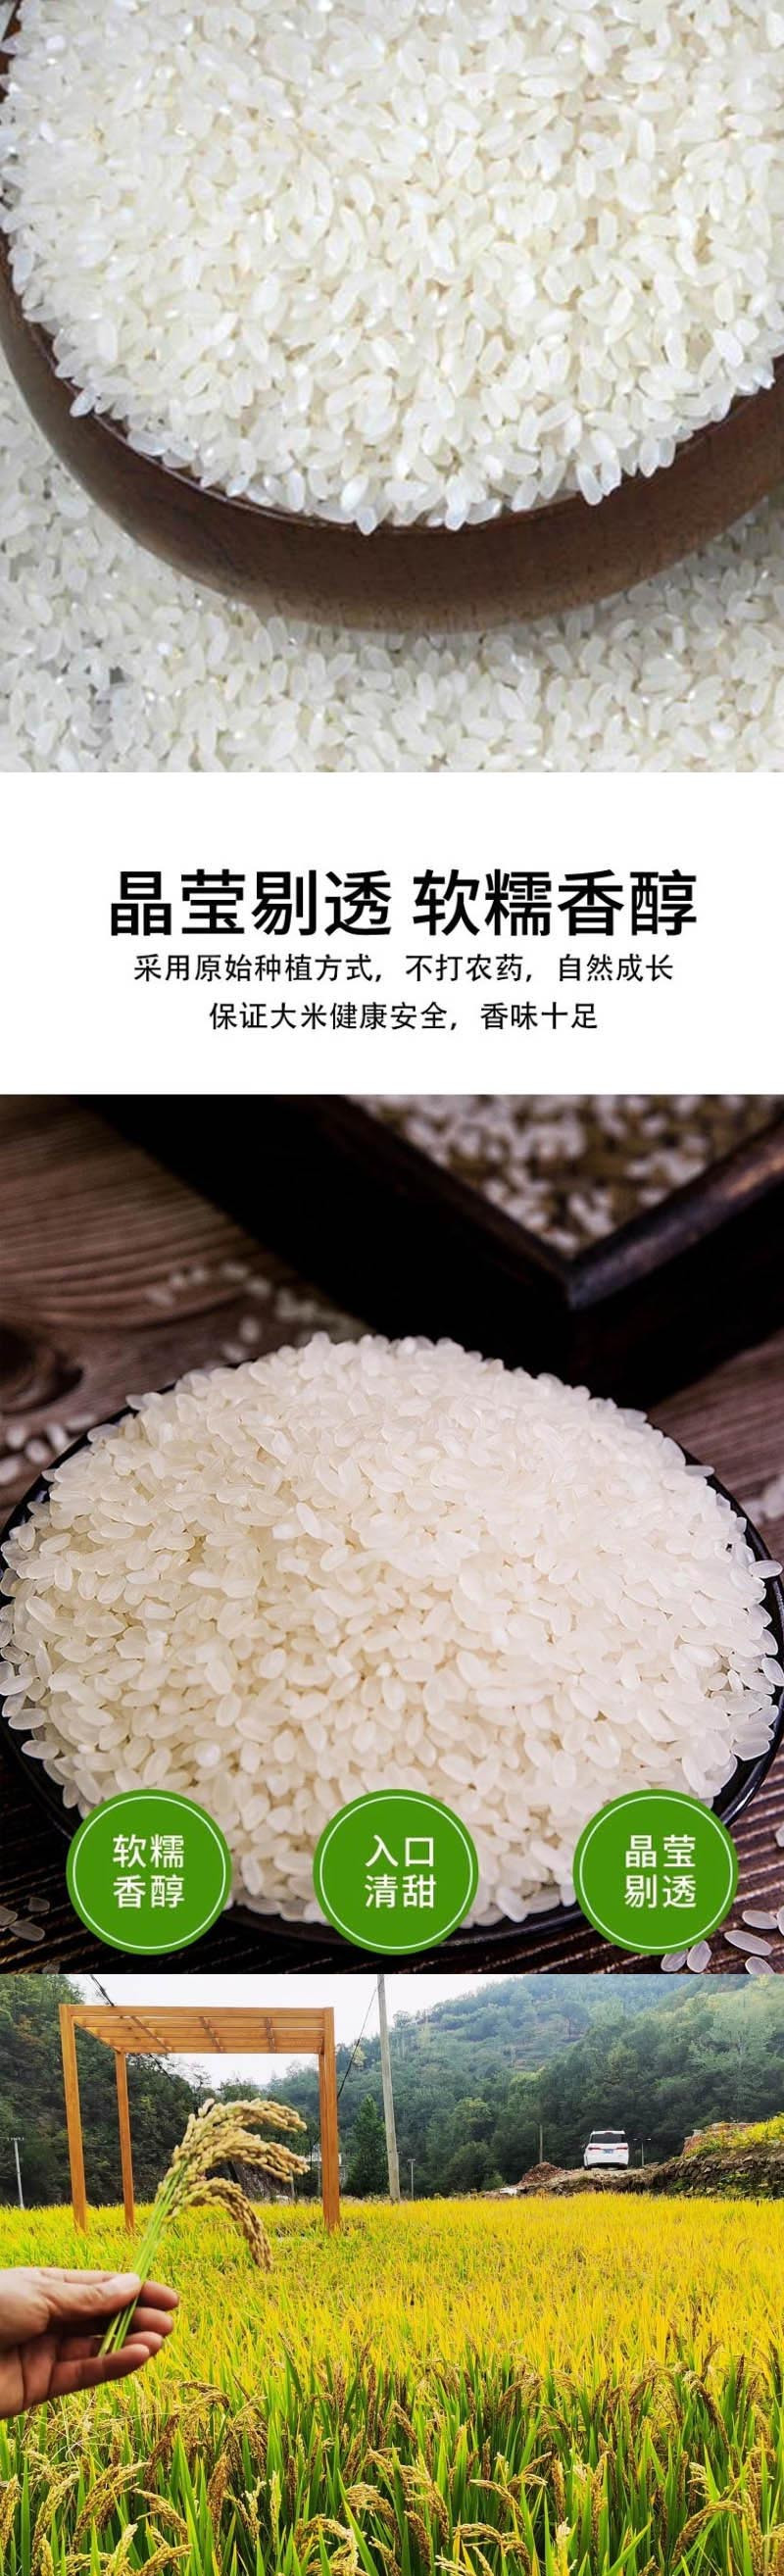  手绘小镇 洛阳农品 农家大米5kg嵩县绿色生态农家稻香米